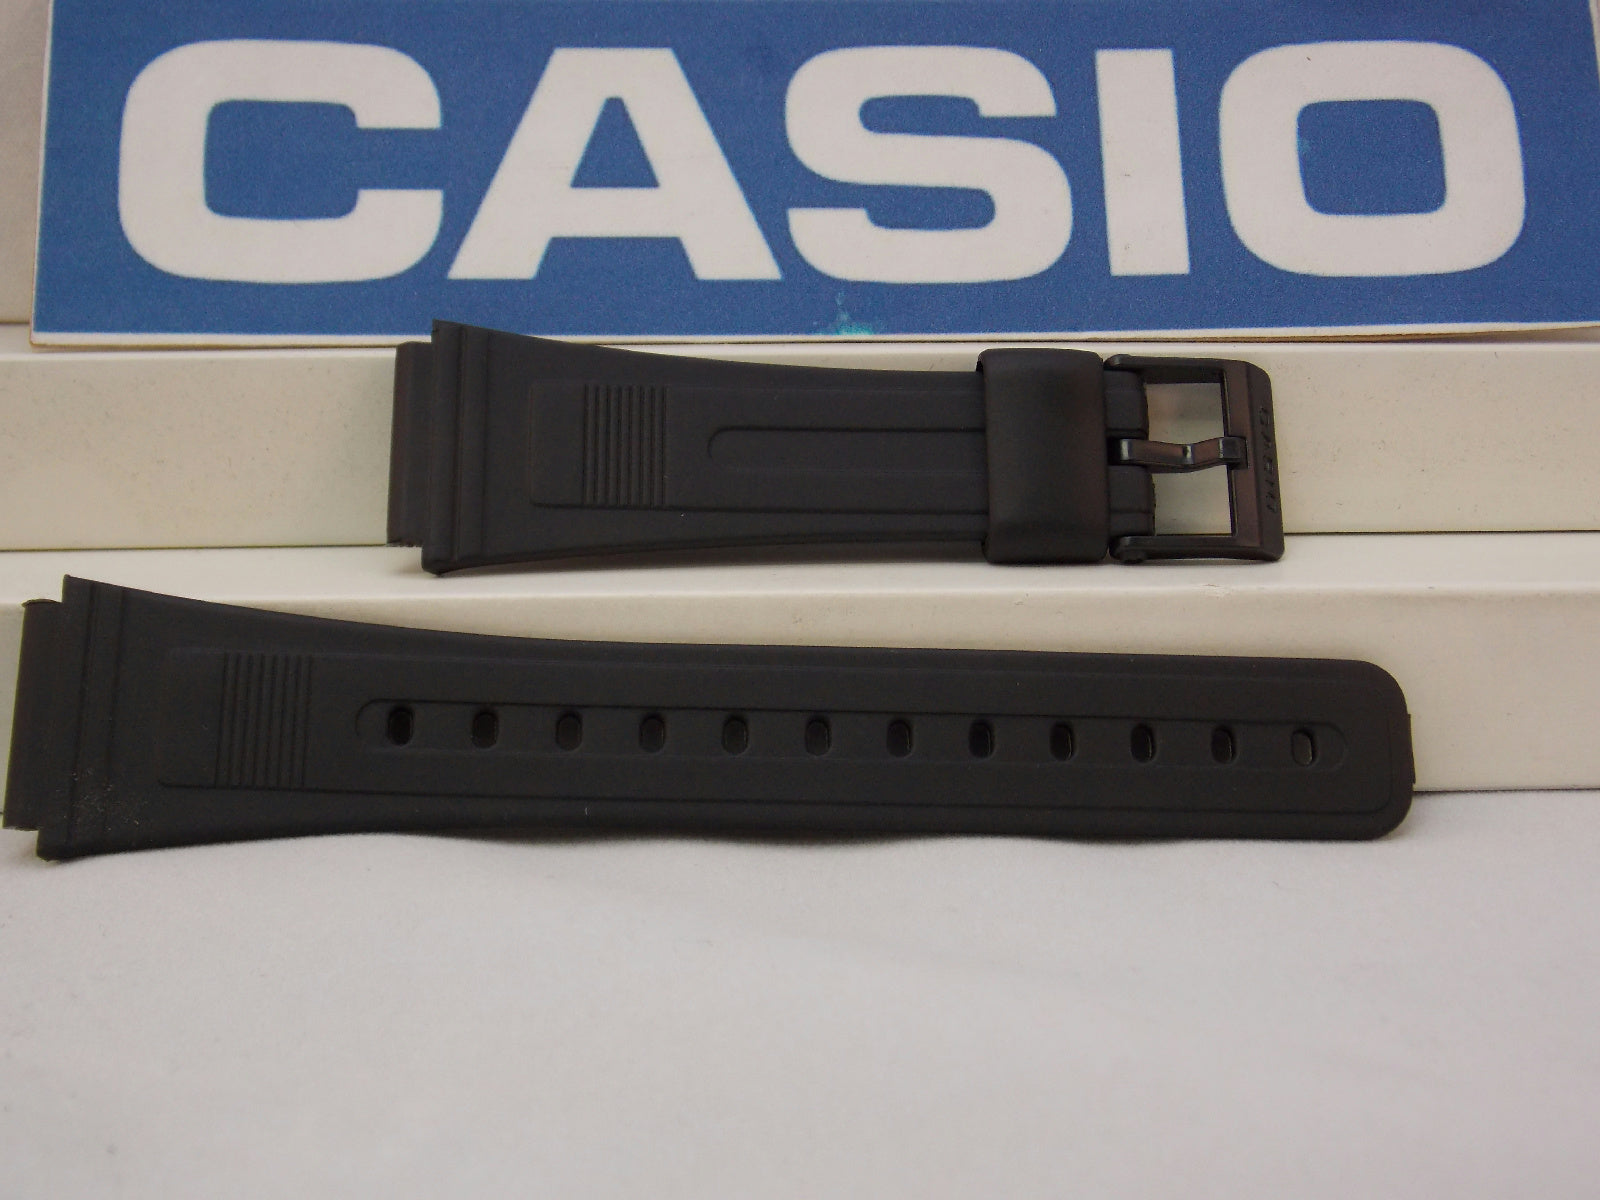 Casio watchband AB-10, AB-20, DB-53, DB-55, DBA-80, FB-52.Black  Watchband